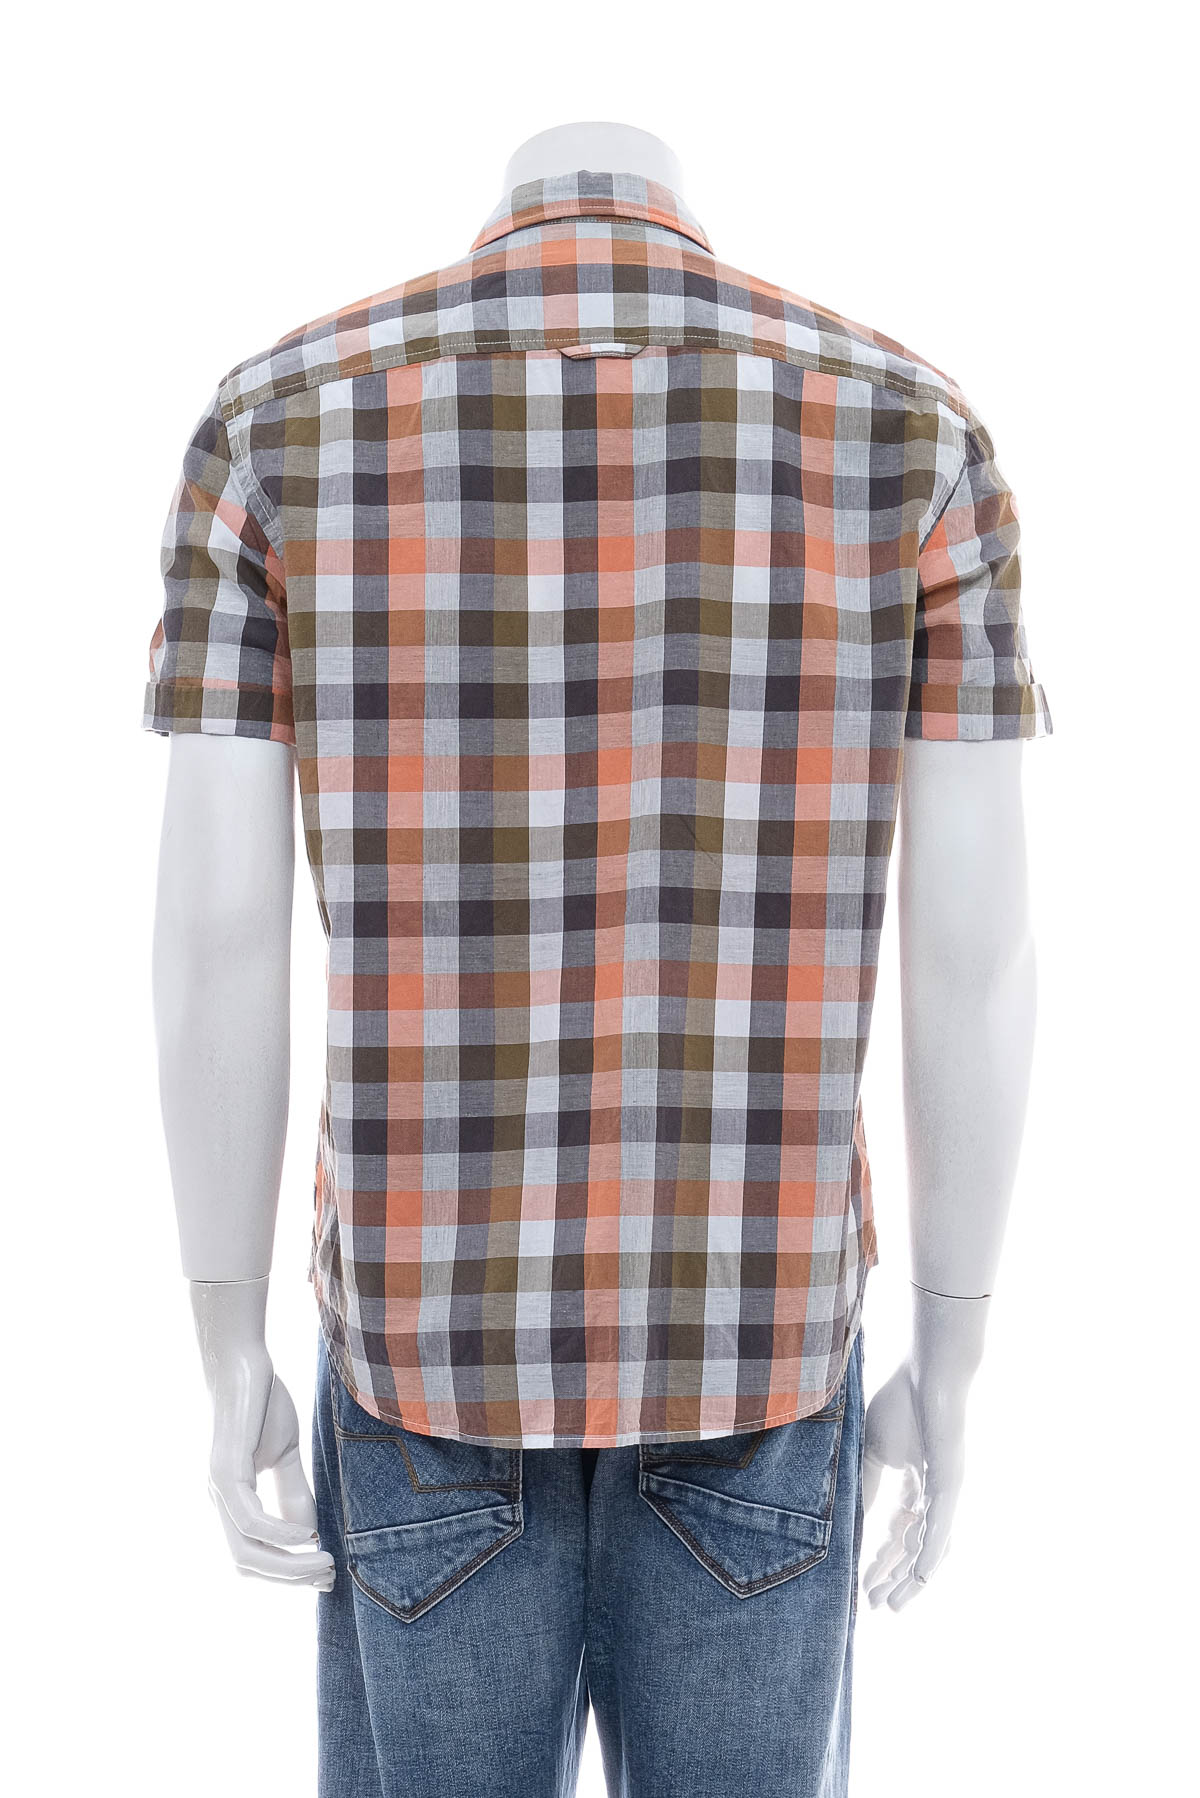 Ανδρικό πουκάμισο - S.Oliver - 1